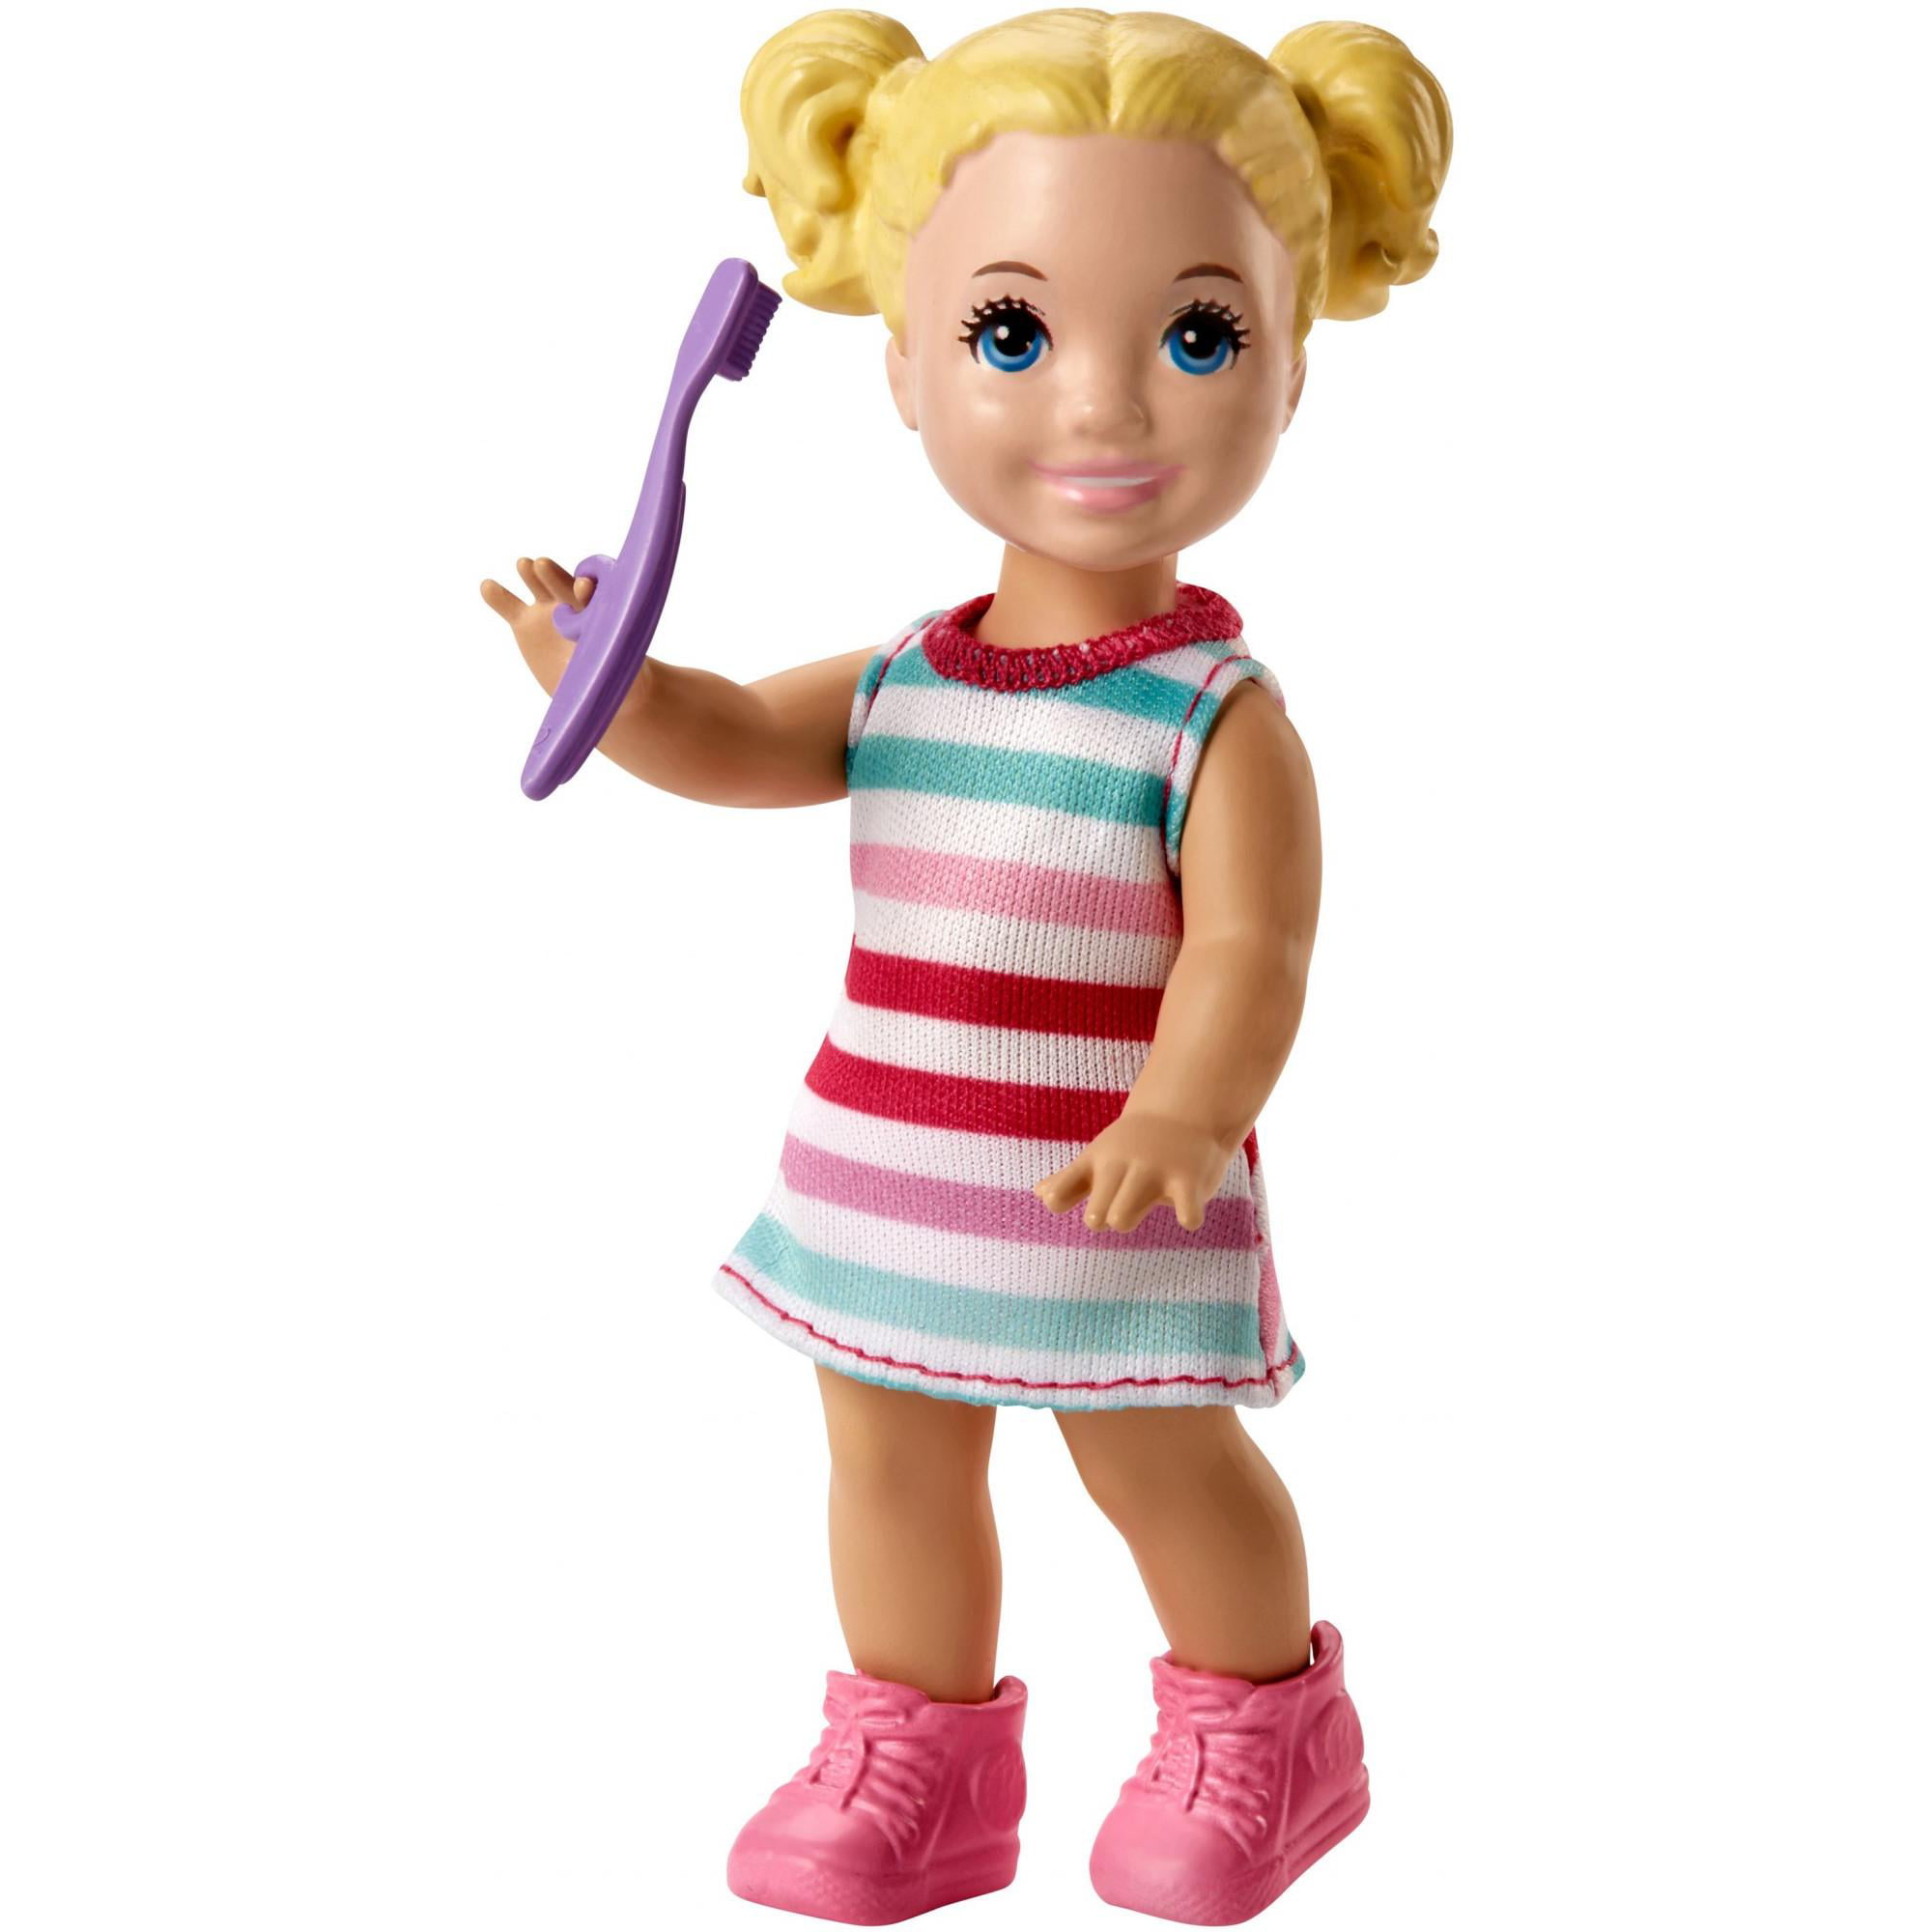 barbie skipper babysitting potty training playset